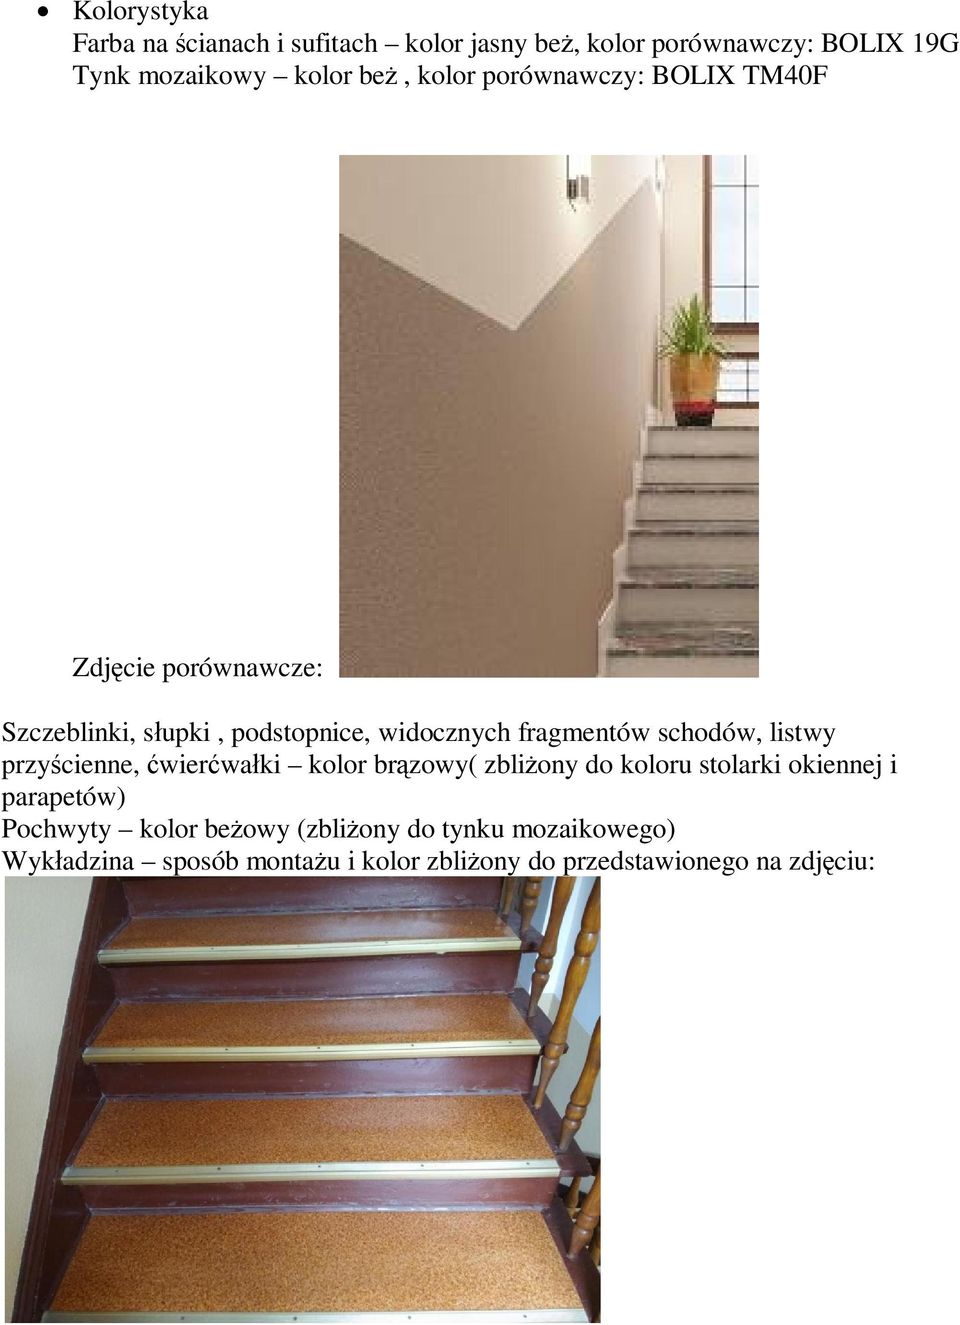 schodów, listwy przycienne, wierwaki kolor brzowy( zbliony do koloru stolarki okiennej i parapetów) Pochwyty